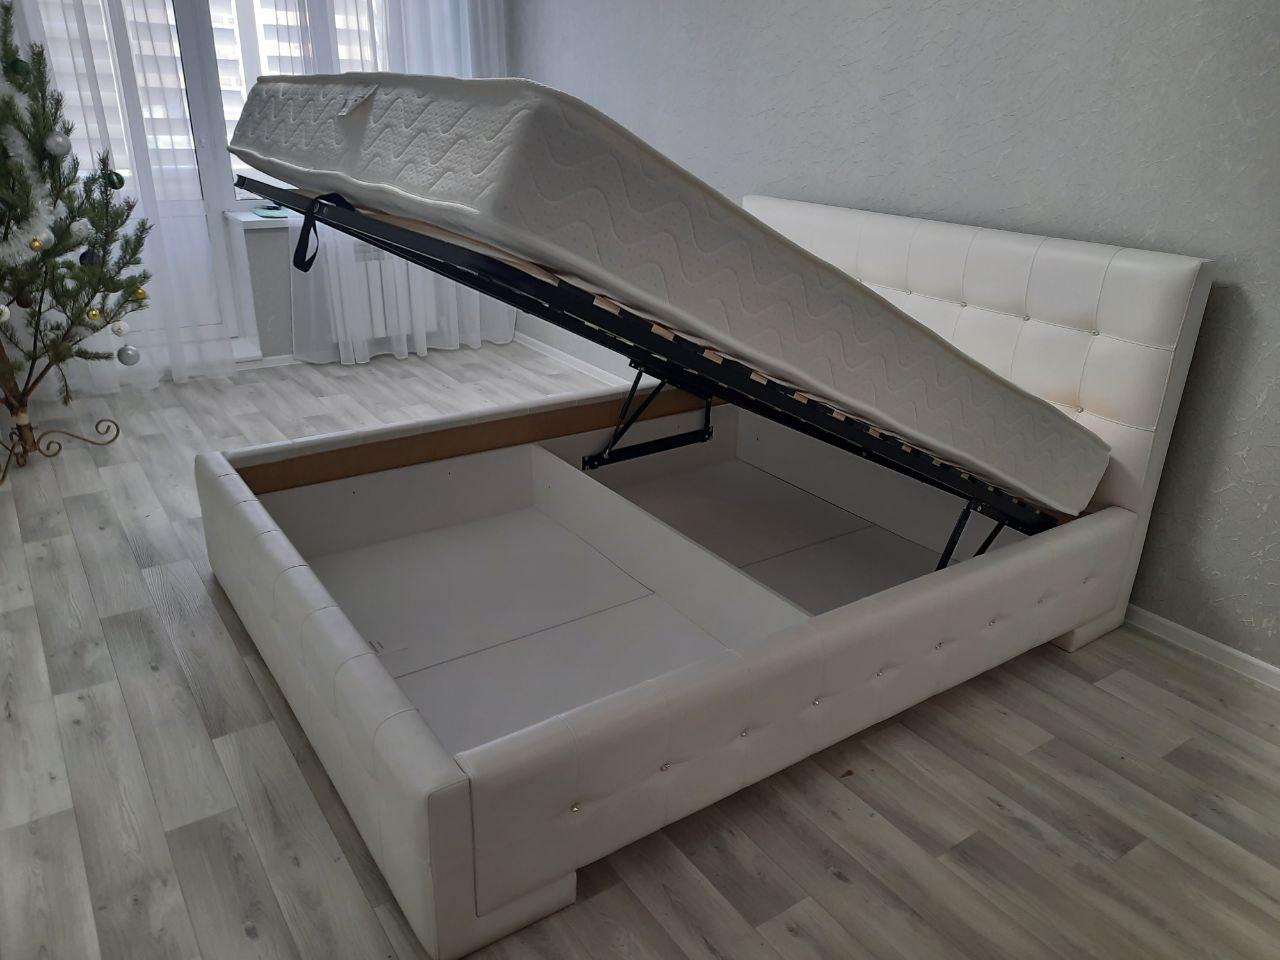 Двуспальная кровать "Bella-Кристалл" 180 х 200 с ортопедическим основанием цвет best 50